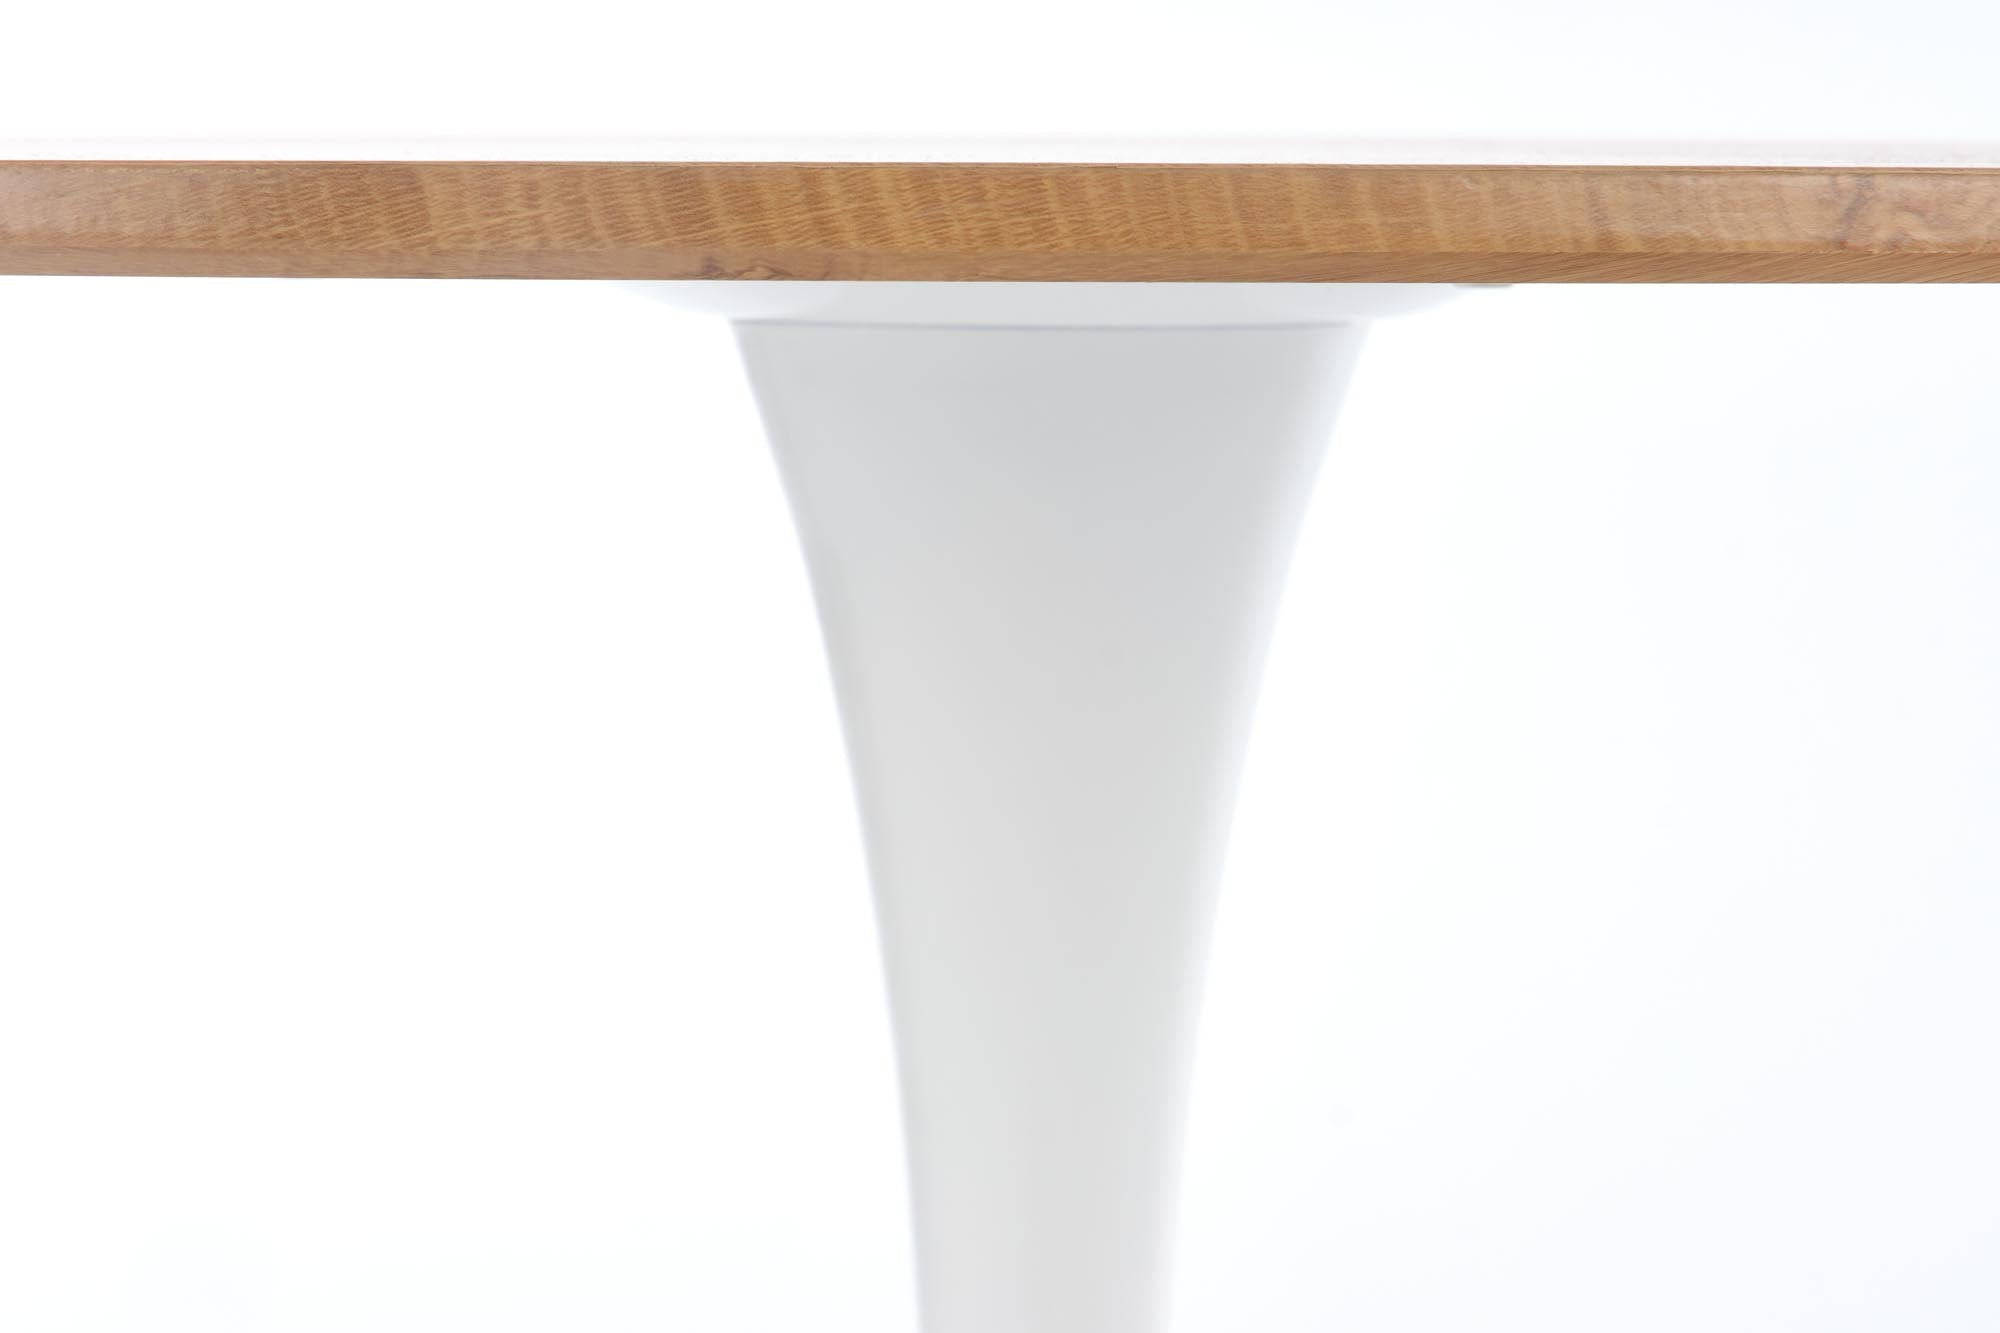 Christian asztal, 80 x 80 cm - Marco Mobili Bútoráruház - Étkezőasztal